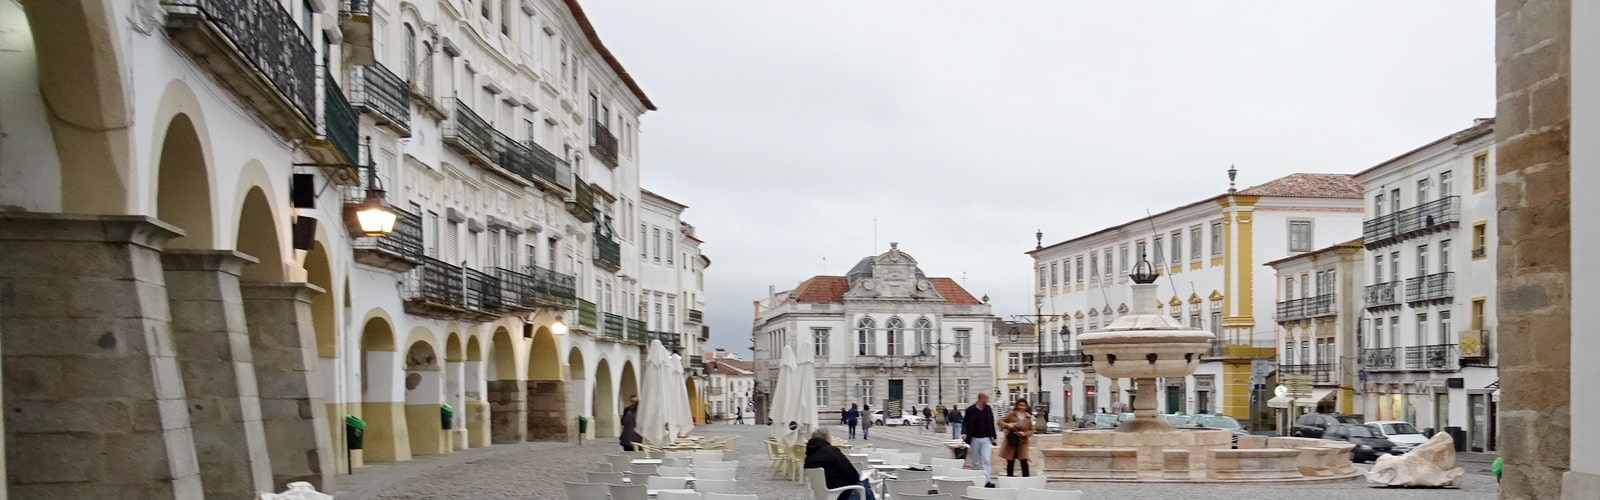 Giraldo Square in Évora, Portugal